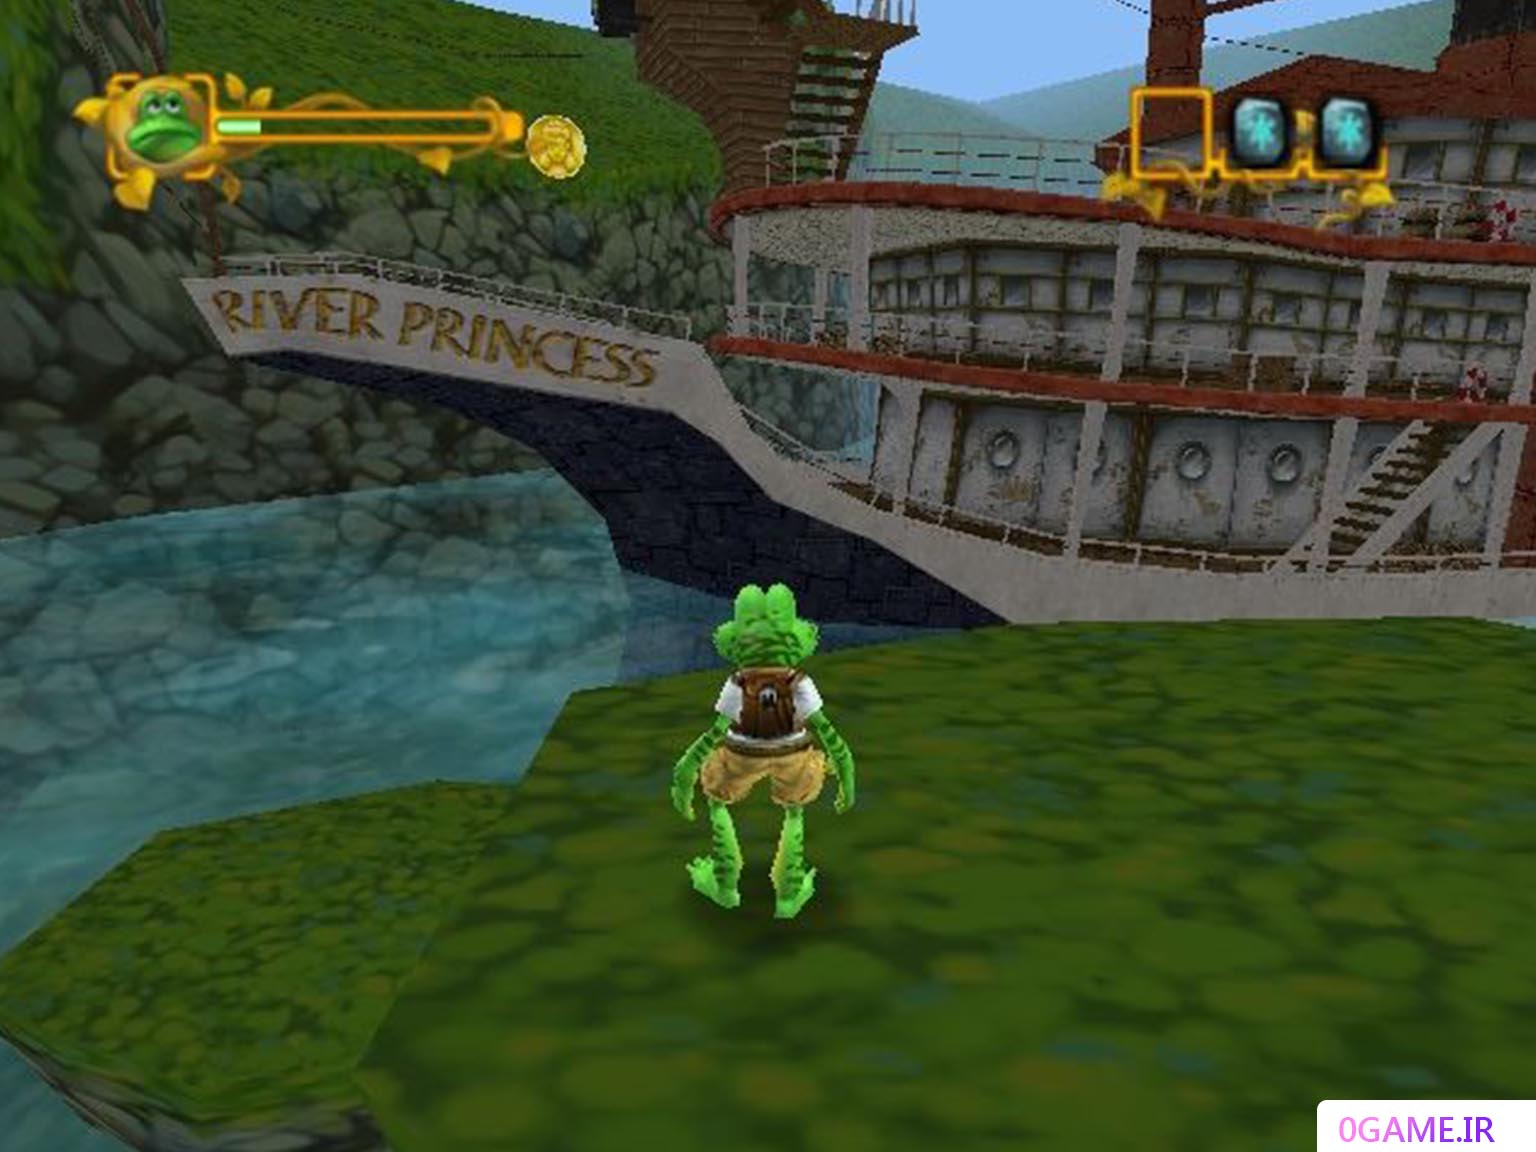 دانلود بازی قورباغه ماجراجو (Frogger: The Great Quest) نسخه کامل برای کامپیوتر